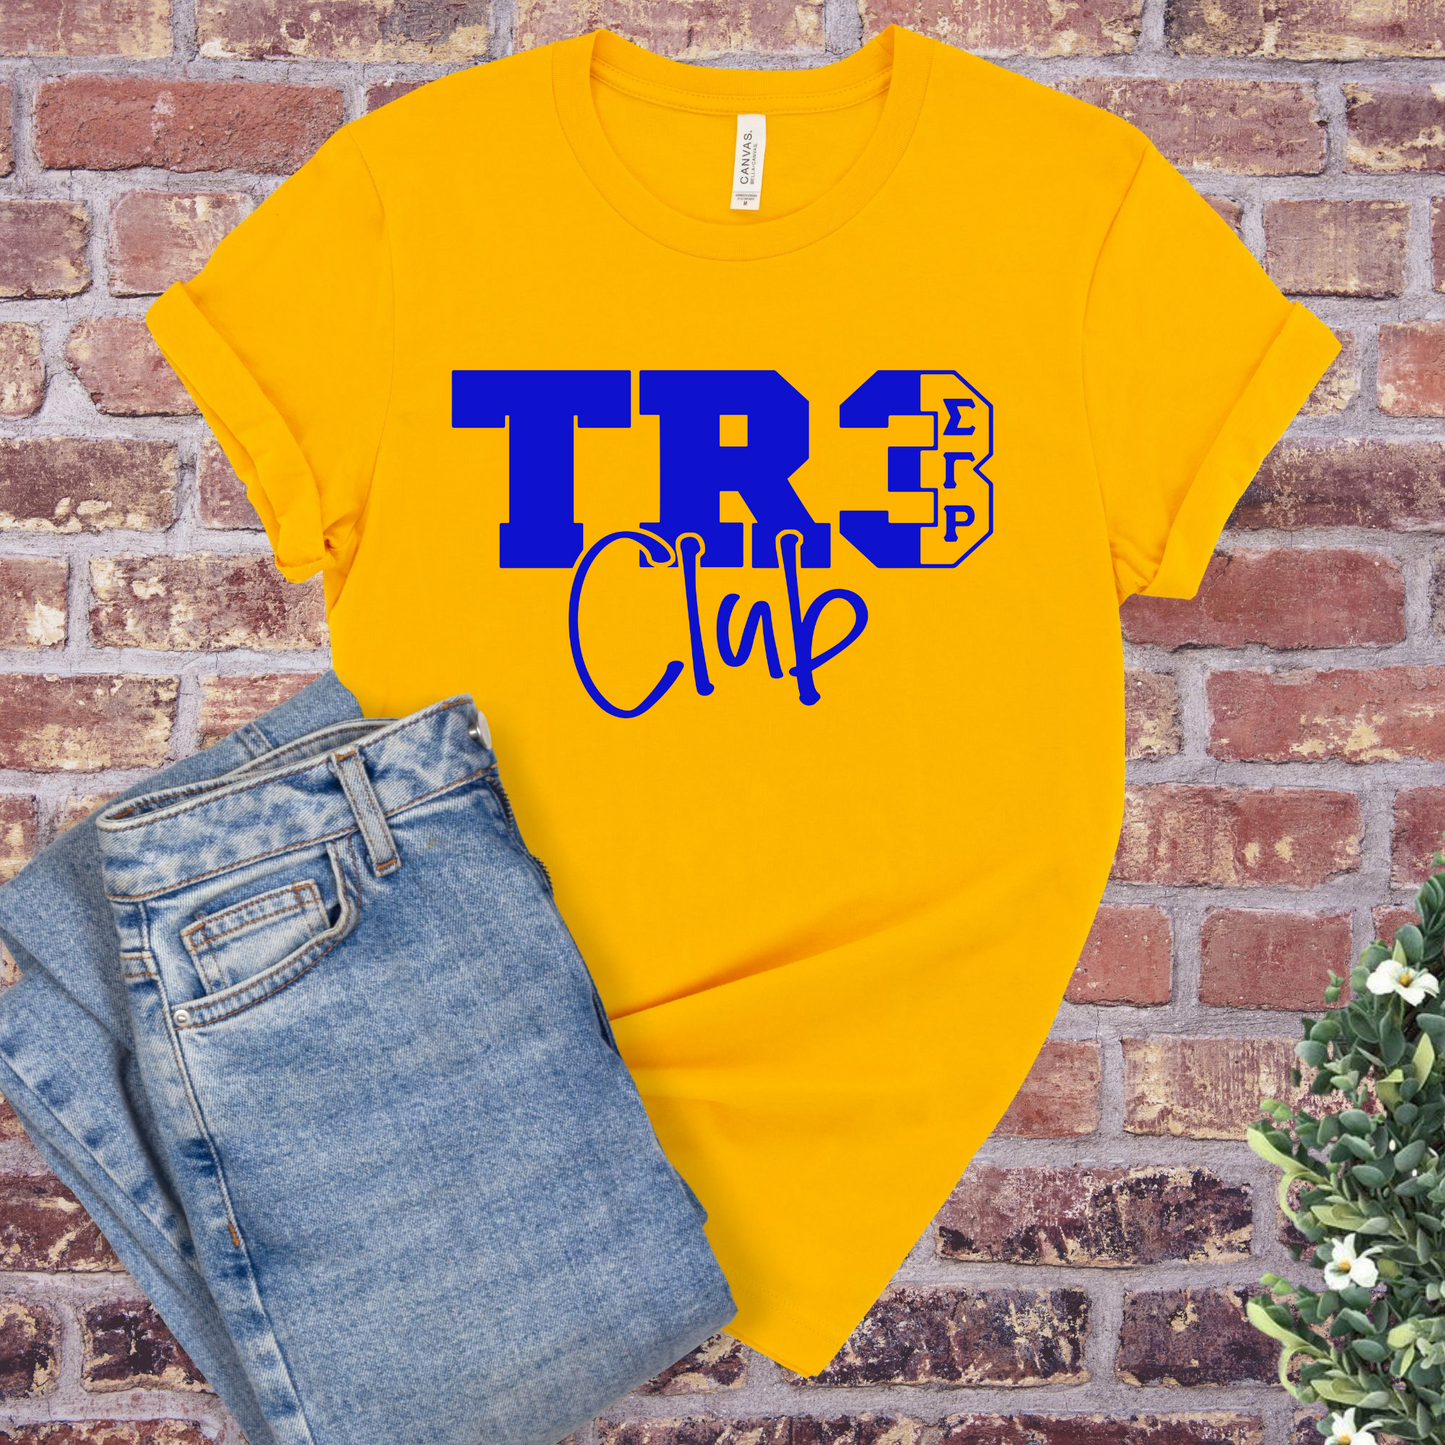 SGRHO Tr3 Club T-Shirt - Divine Greekwear